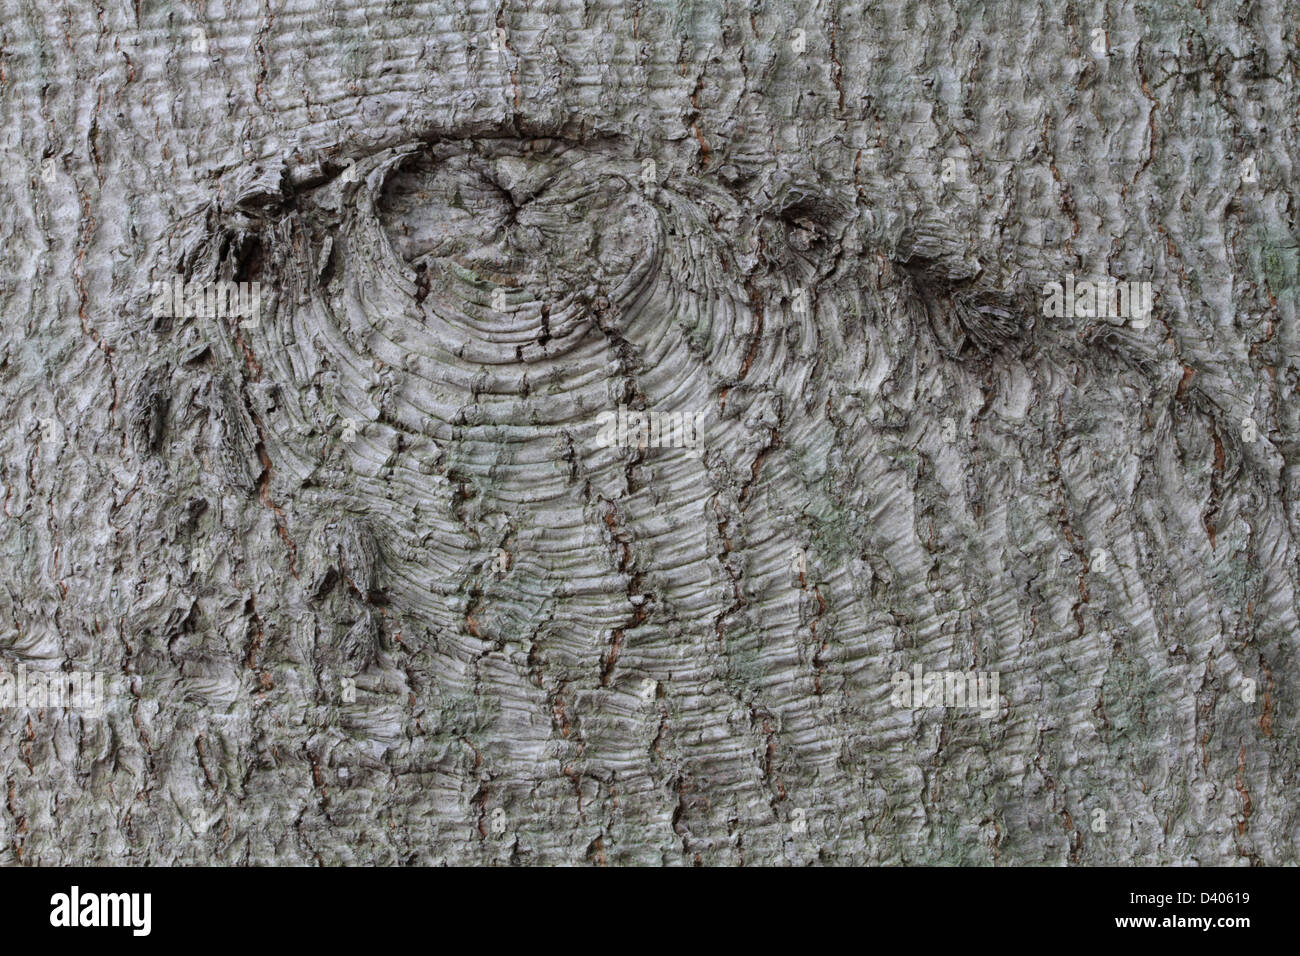 Una rama cicatriz en la corteza de un americano de hayas, Fagus grandifolia. Foto de stock